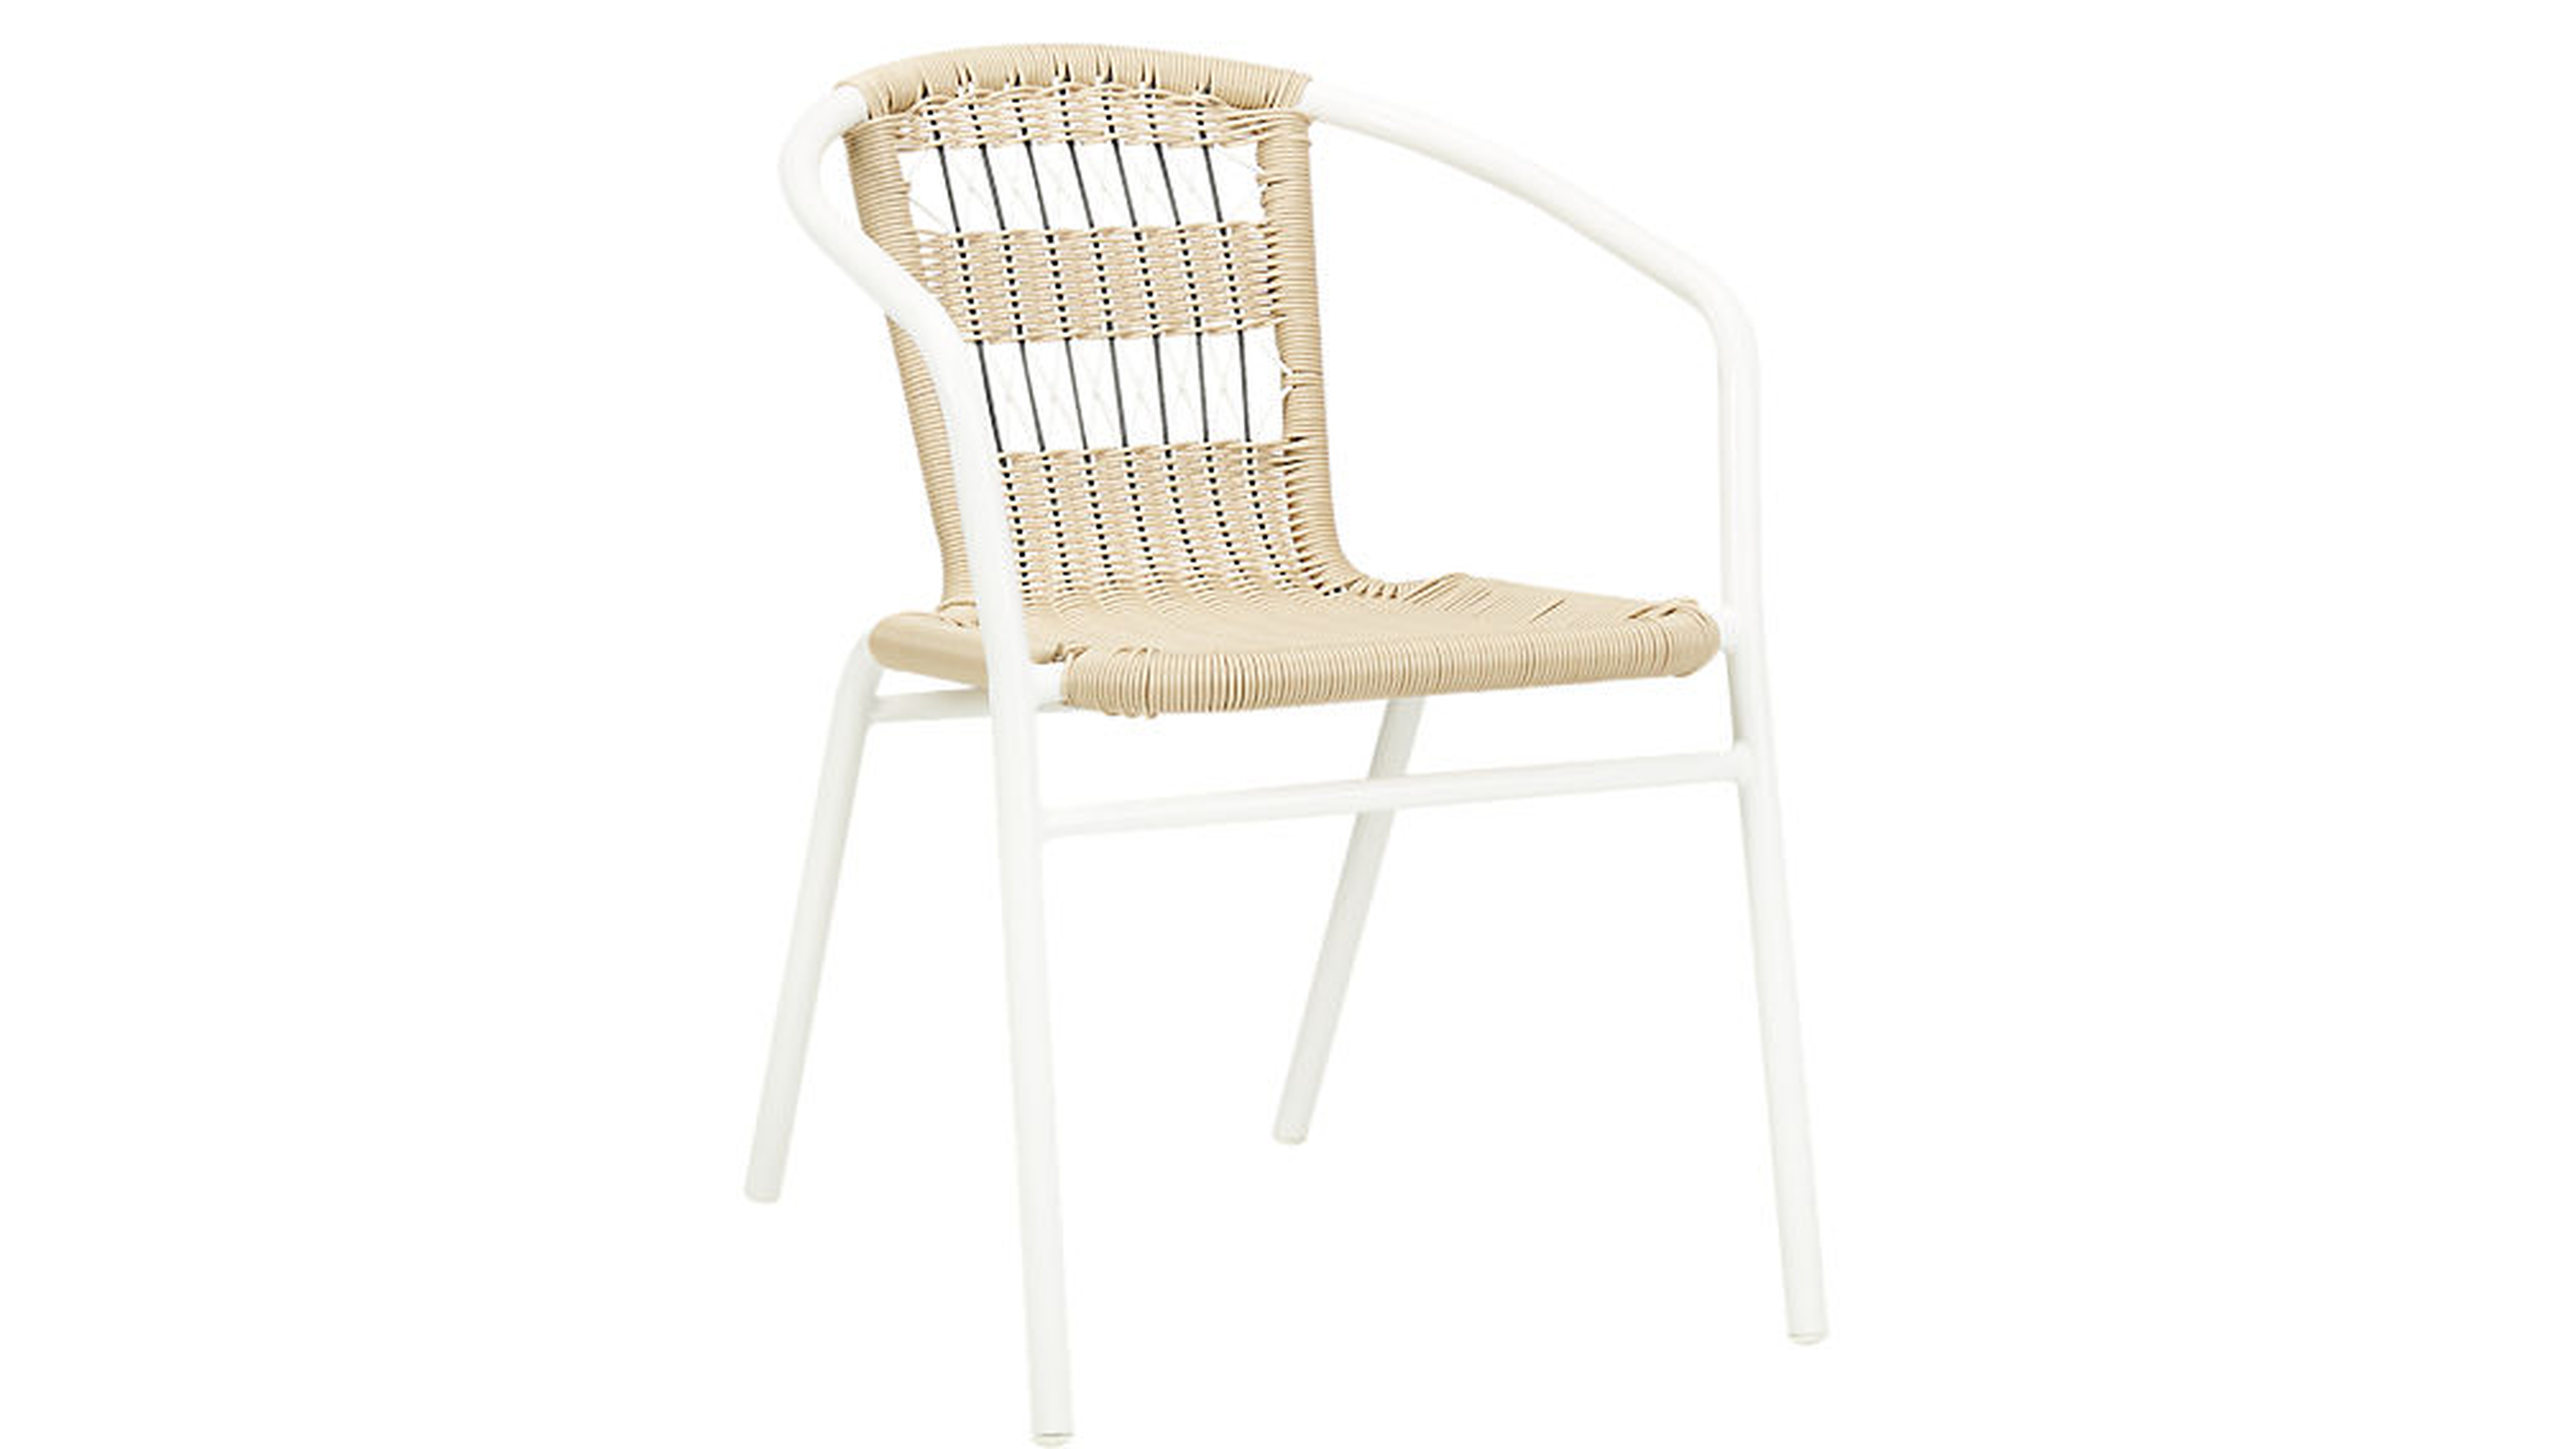 Rex open weave chair - Est. Early July - CB2